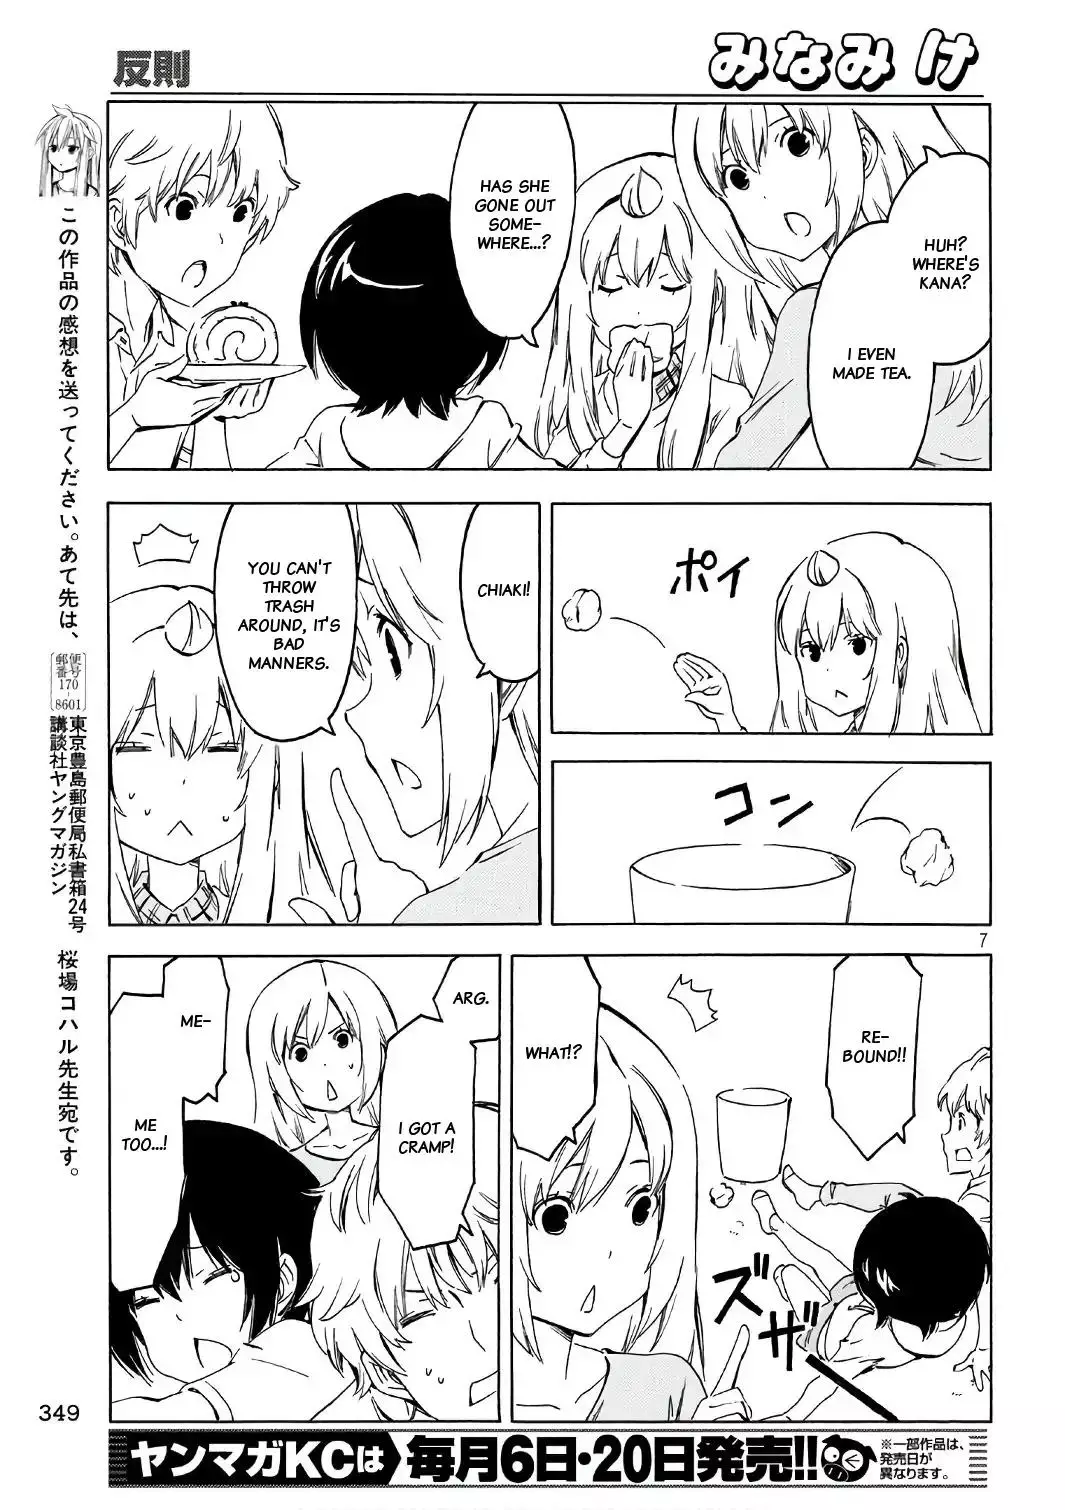 Minami-ke - 343 page 6